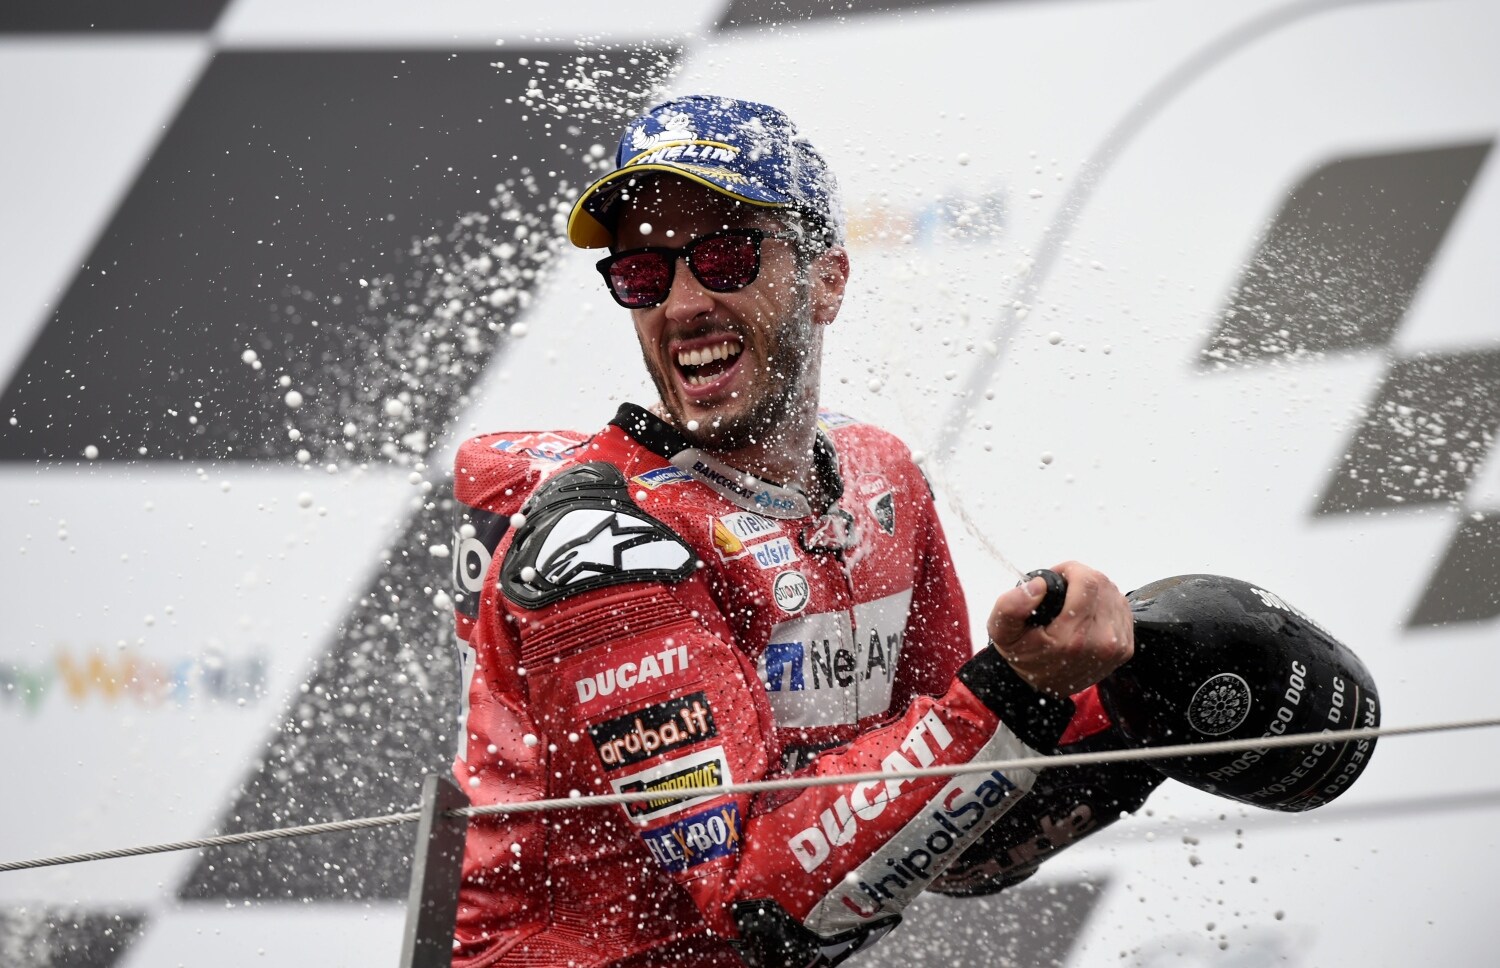 El piloto italiano de Mission Winnow Ducati, Andrea Dovizioso, celebra en el podio después de ganar el Gran Premio de Moto GP de Austria en Spielberg 